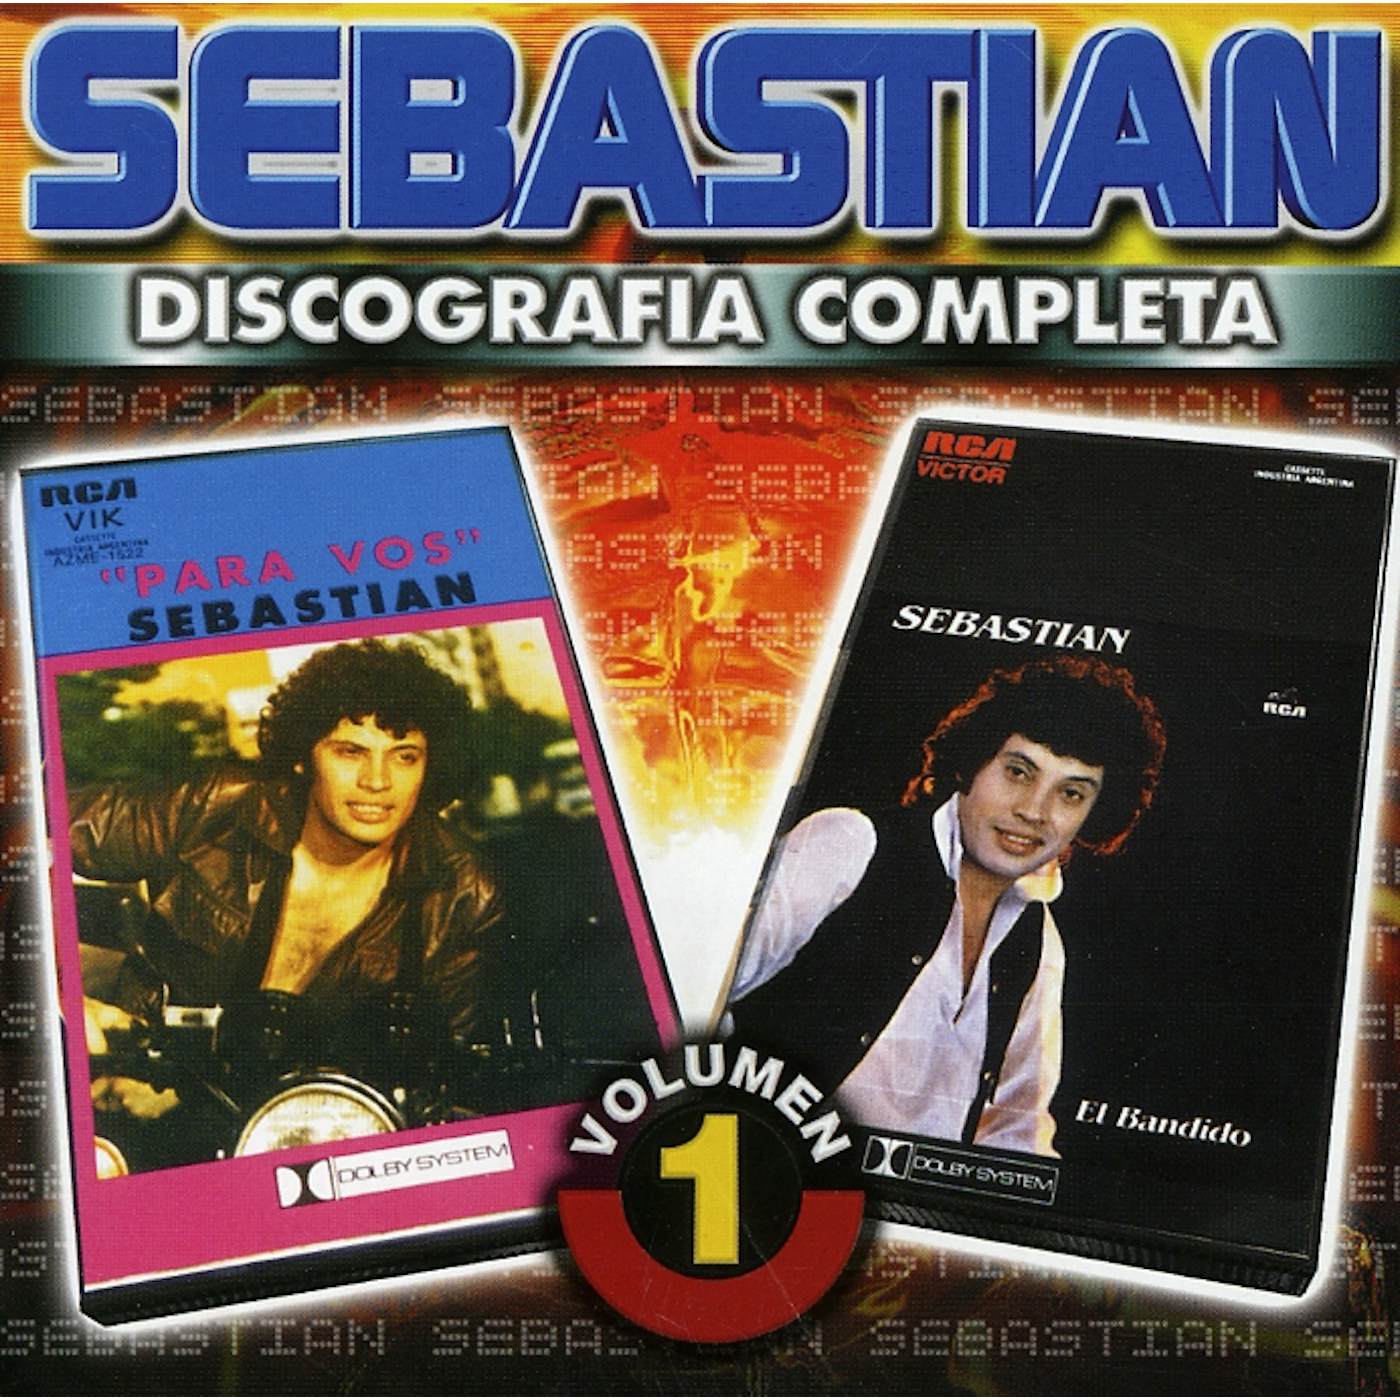 SebastiAn DISCOGRAFIA COMPLETA 1 CD